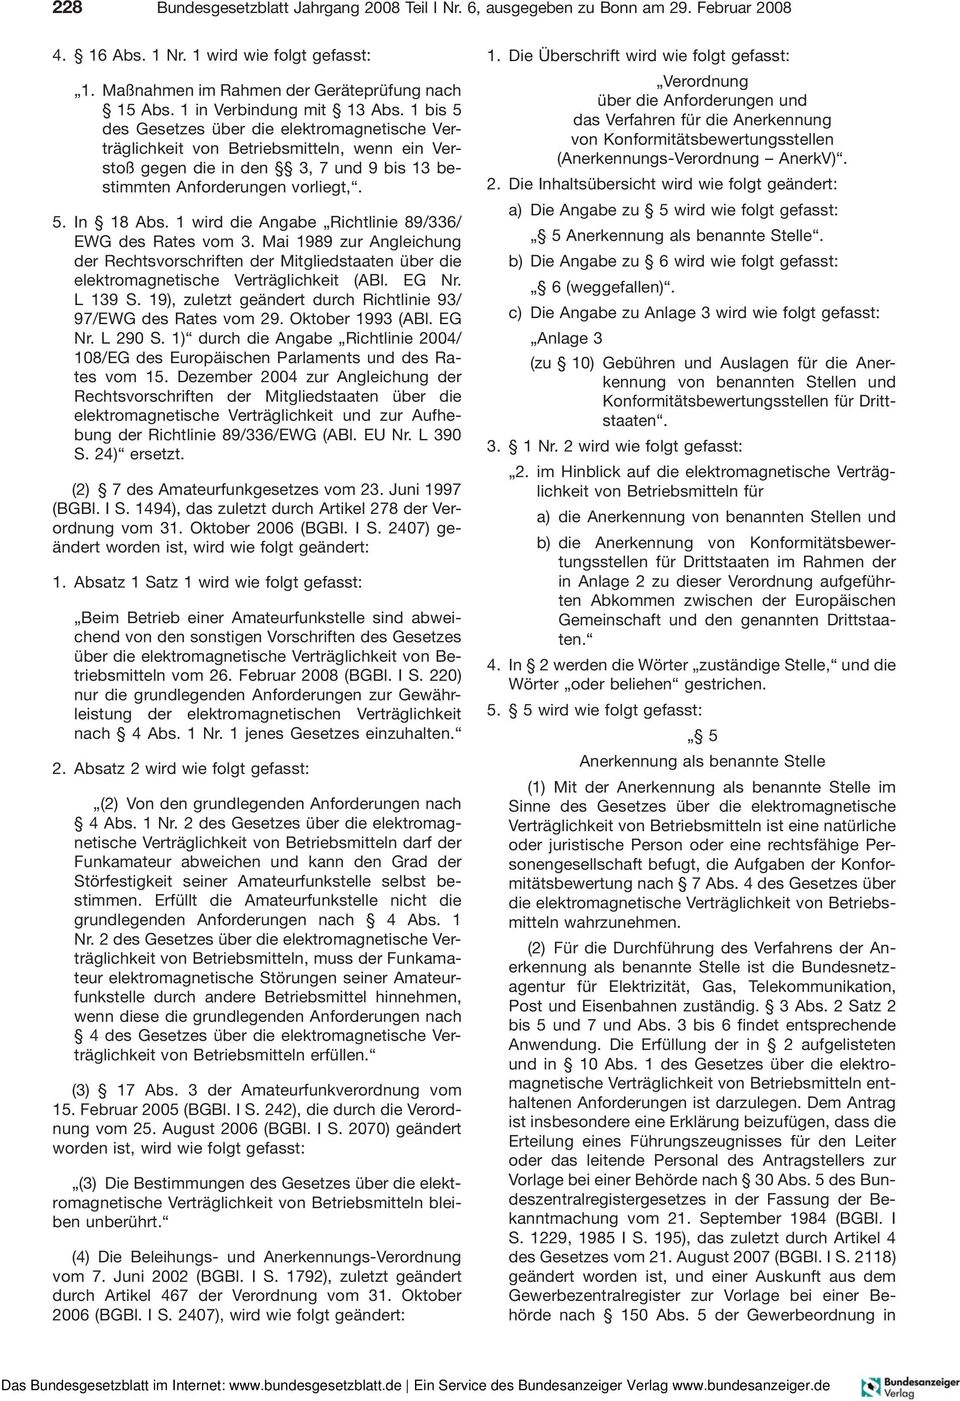 1wirddieAngabe Richtlinie 89/336/ EWG des Rates vom 3. Mai 1989 zur Angleichung der Rechtsvorschriften der Mitgliedstaaten über die elektromagnetische Verträglichkeit (ABl. EG Nr. L 139 S.